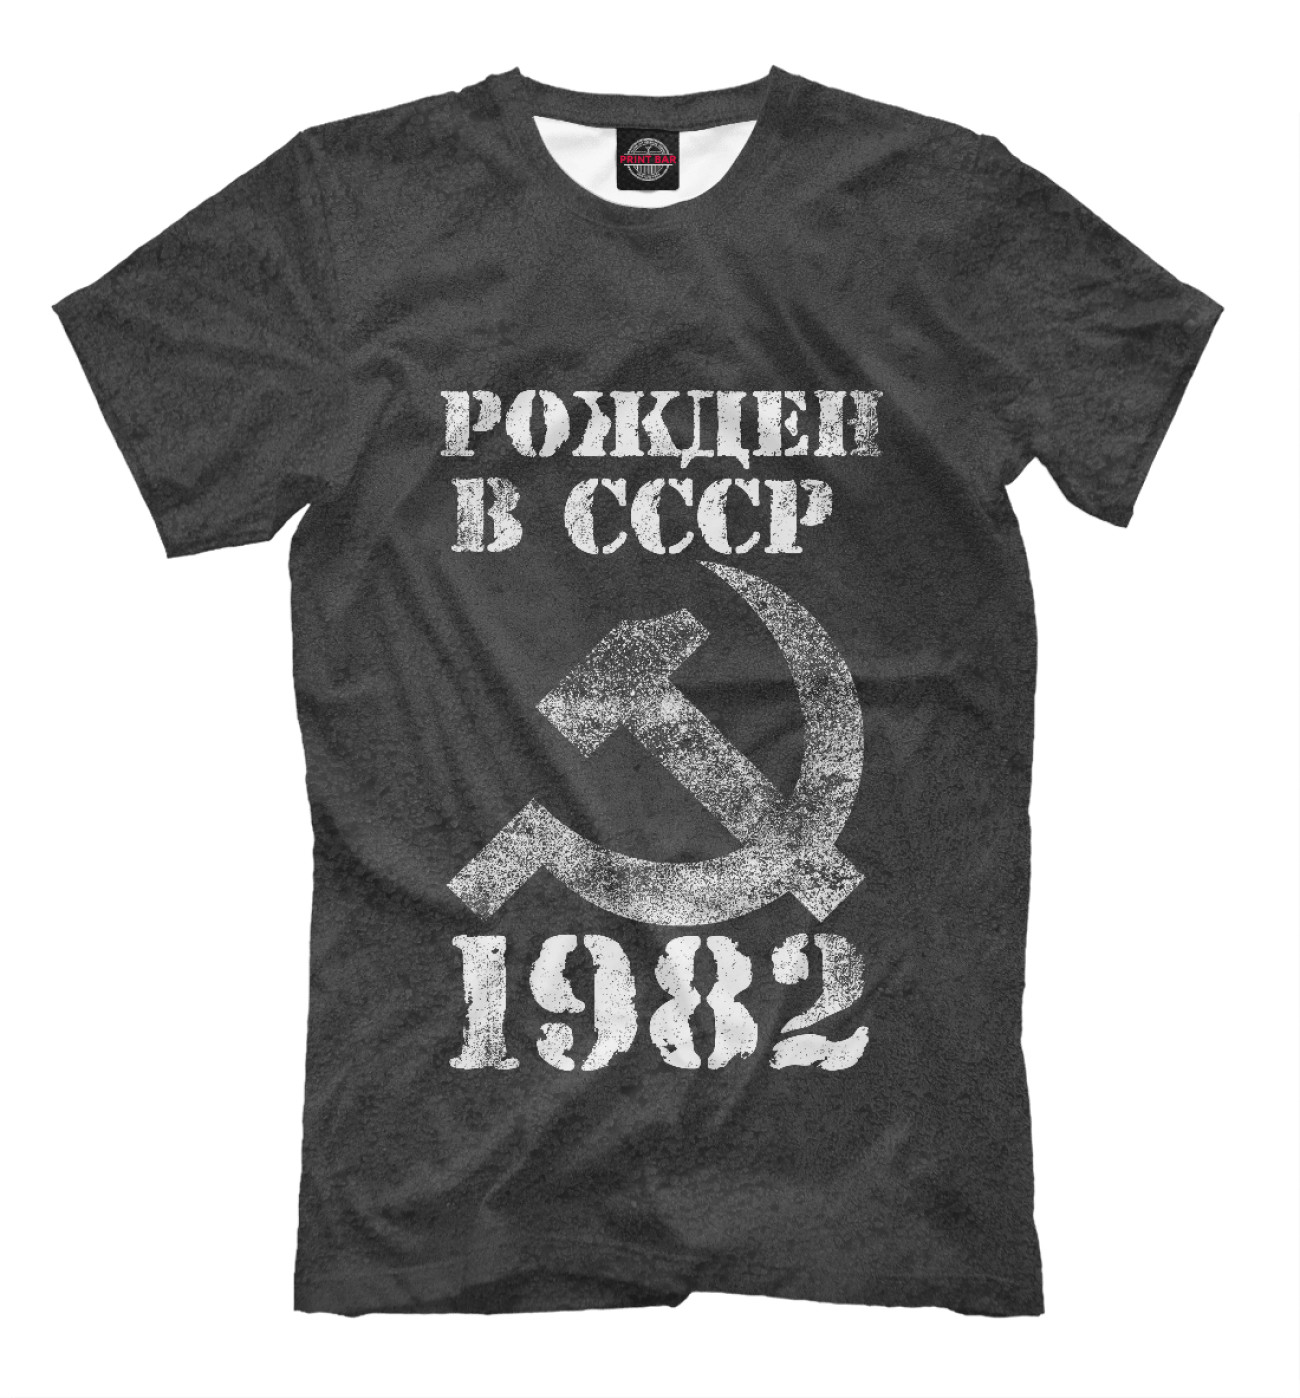 Мужская Футболка Рожден в СССР 1982, артикул: DVD-945096-fut-2